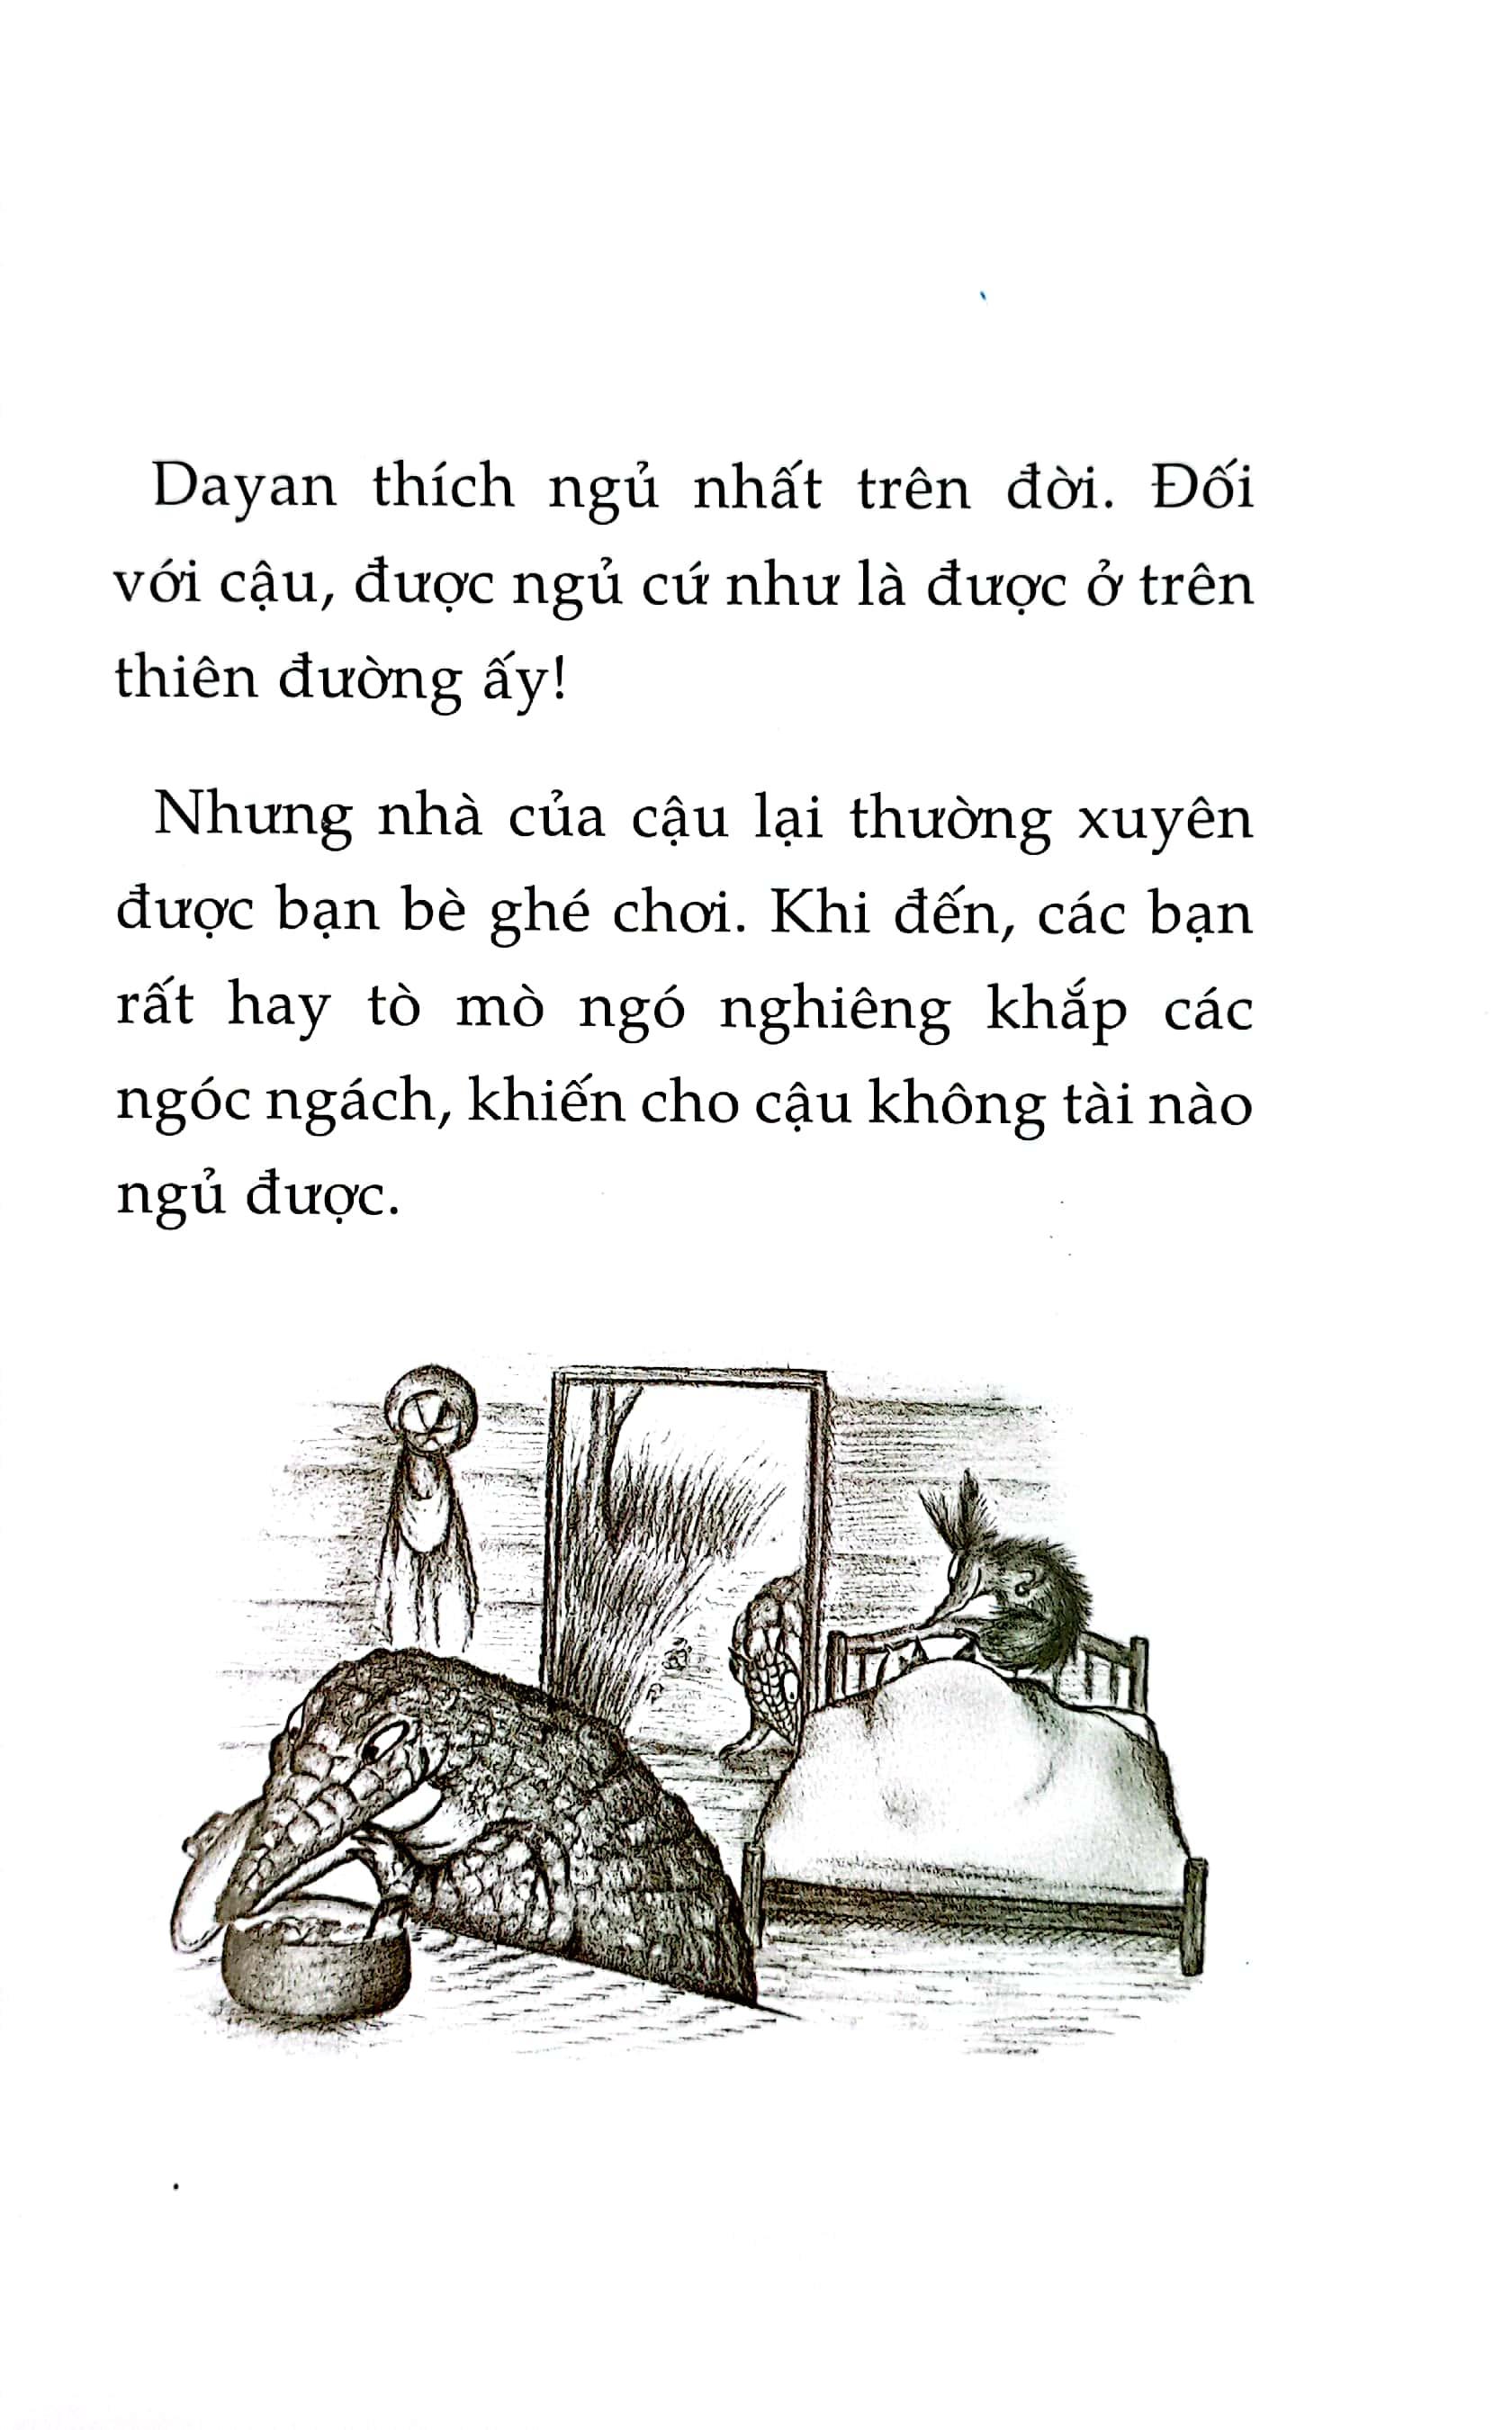 Combo Sách - Mogu Mọt Sách - Loạt Truyện Mèo Dayan (Bộ 4 Cuốn)